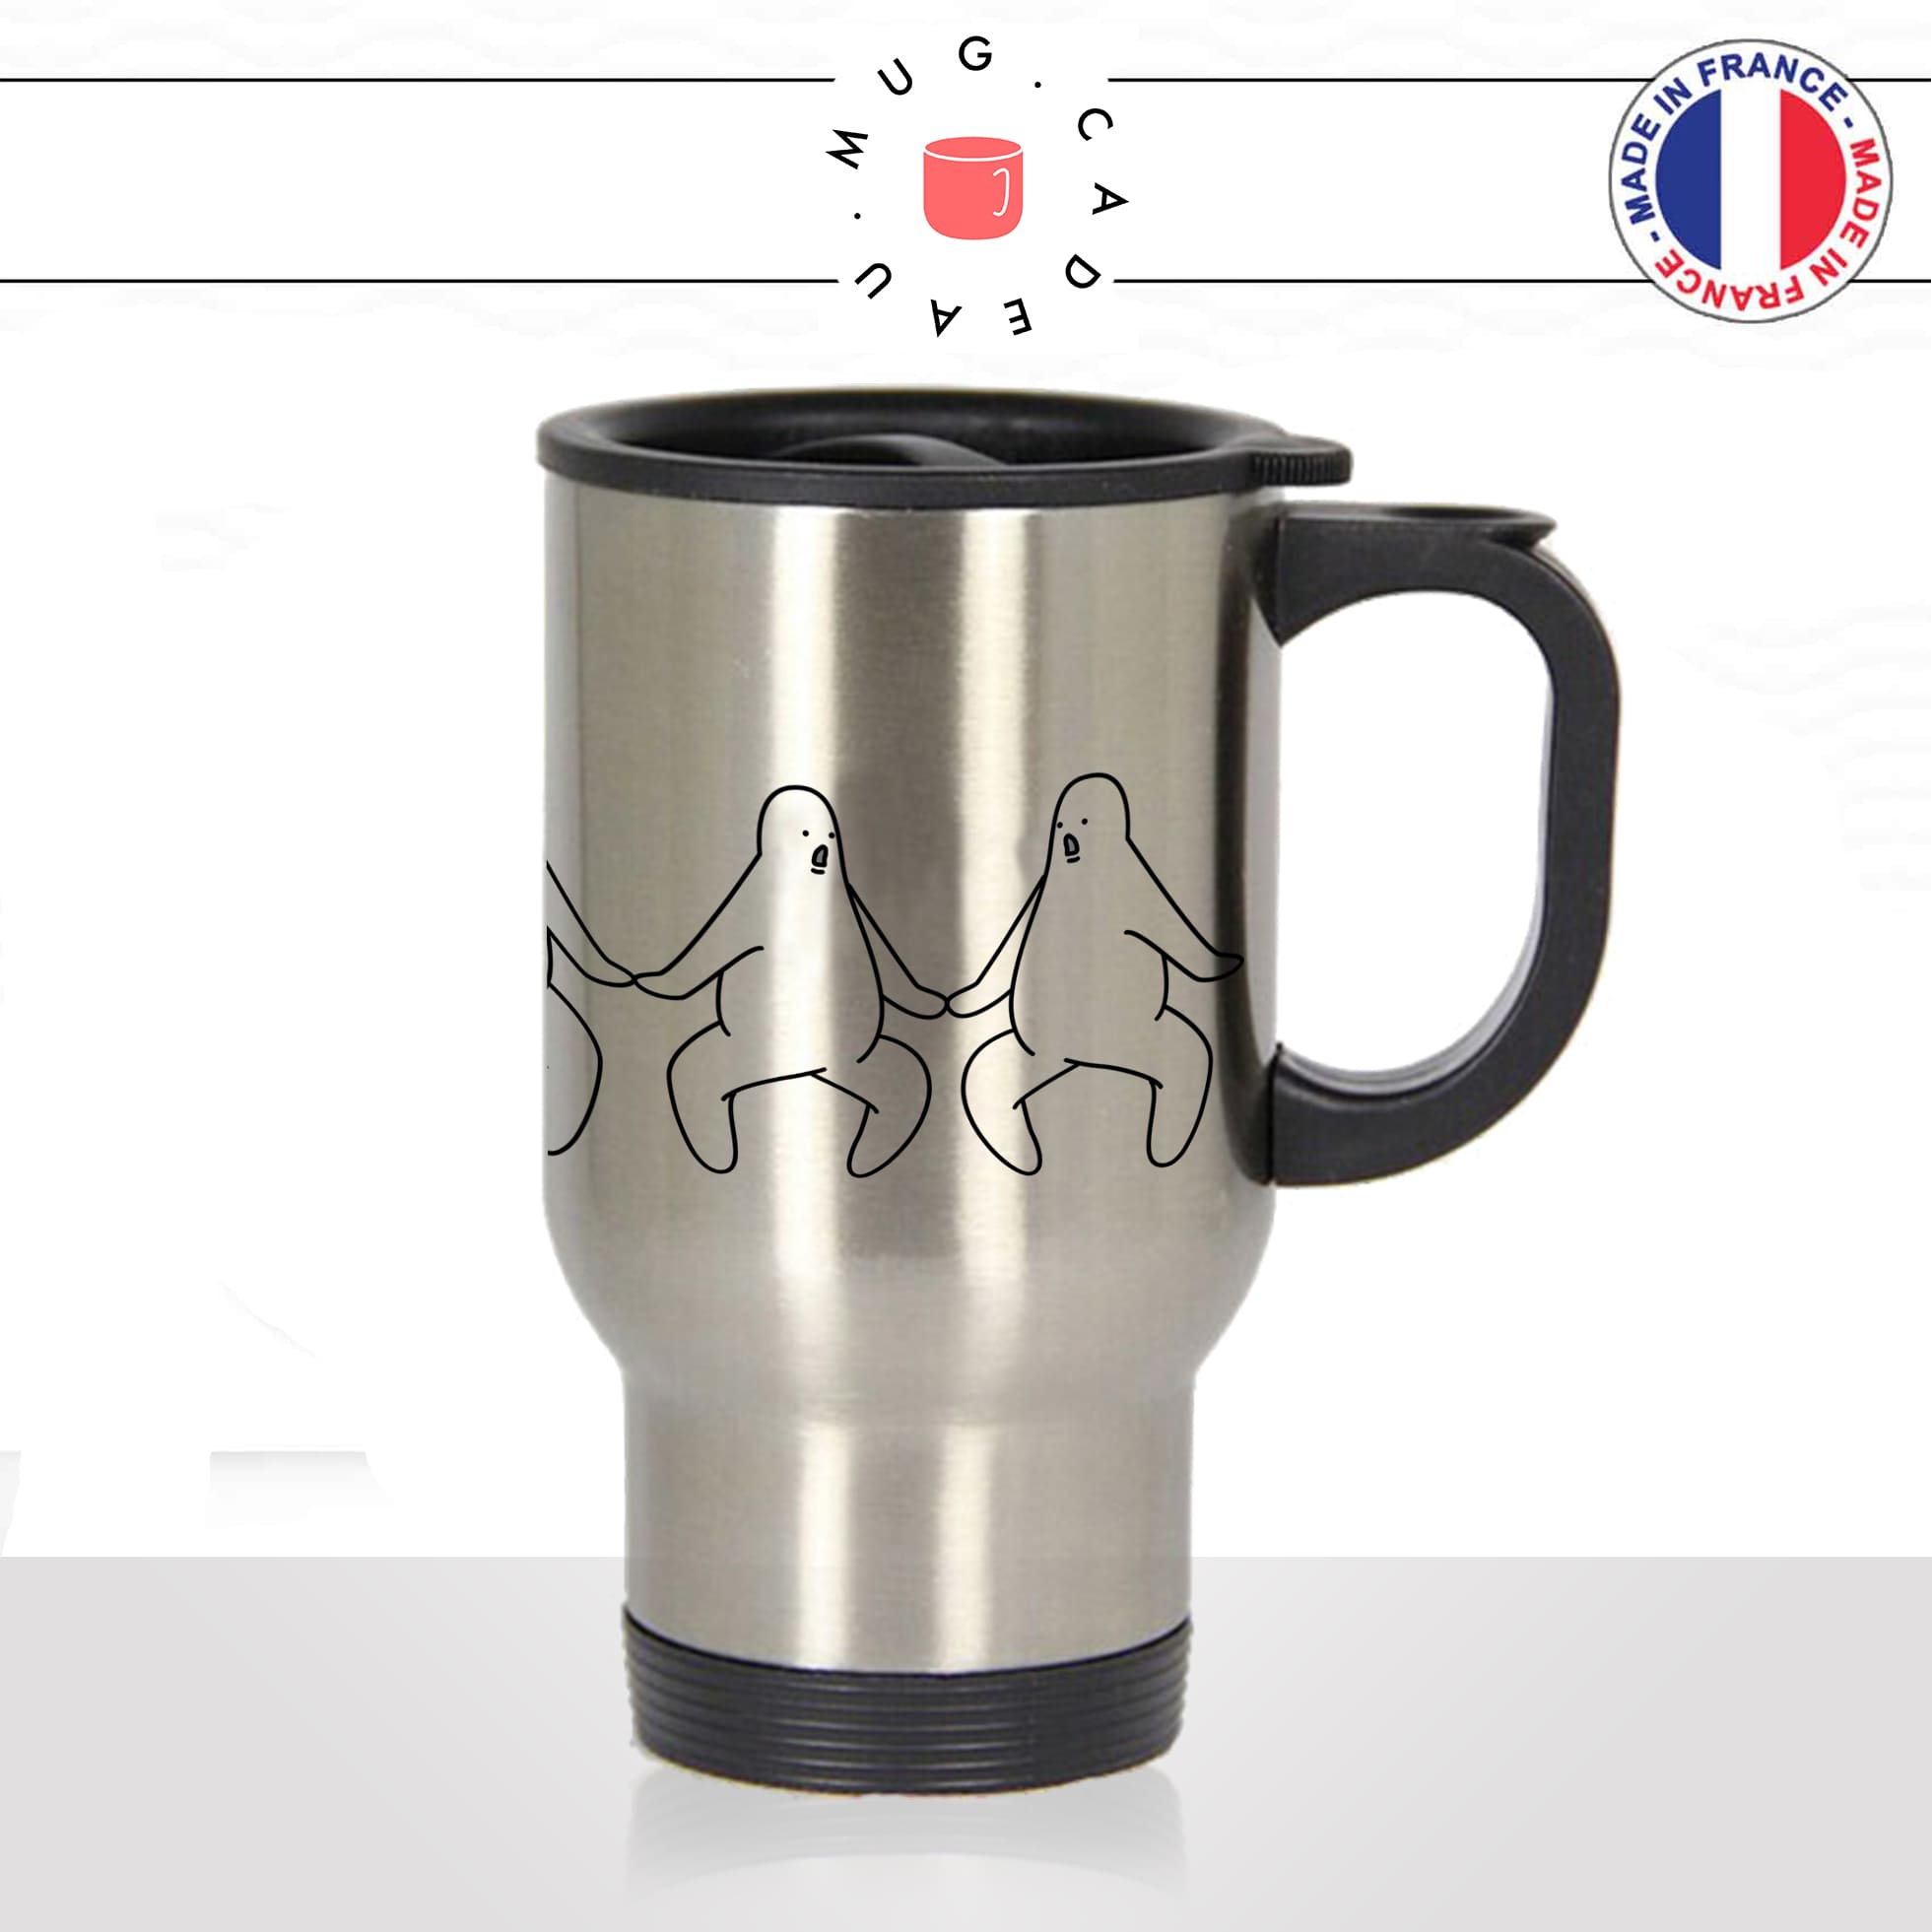 mug-tasse-de-voyage-inox-gris-café-a-emporter-dessin-bonhommes-oh-my-god-chaine-humour-drole-cool-fun-idée-cadeau-originale2